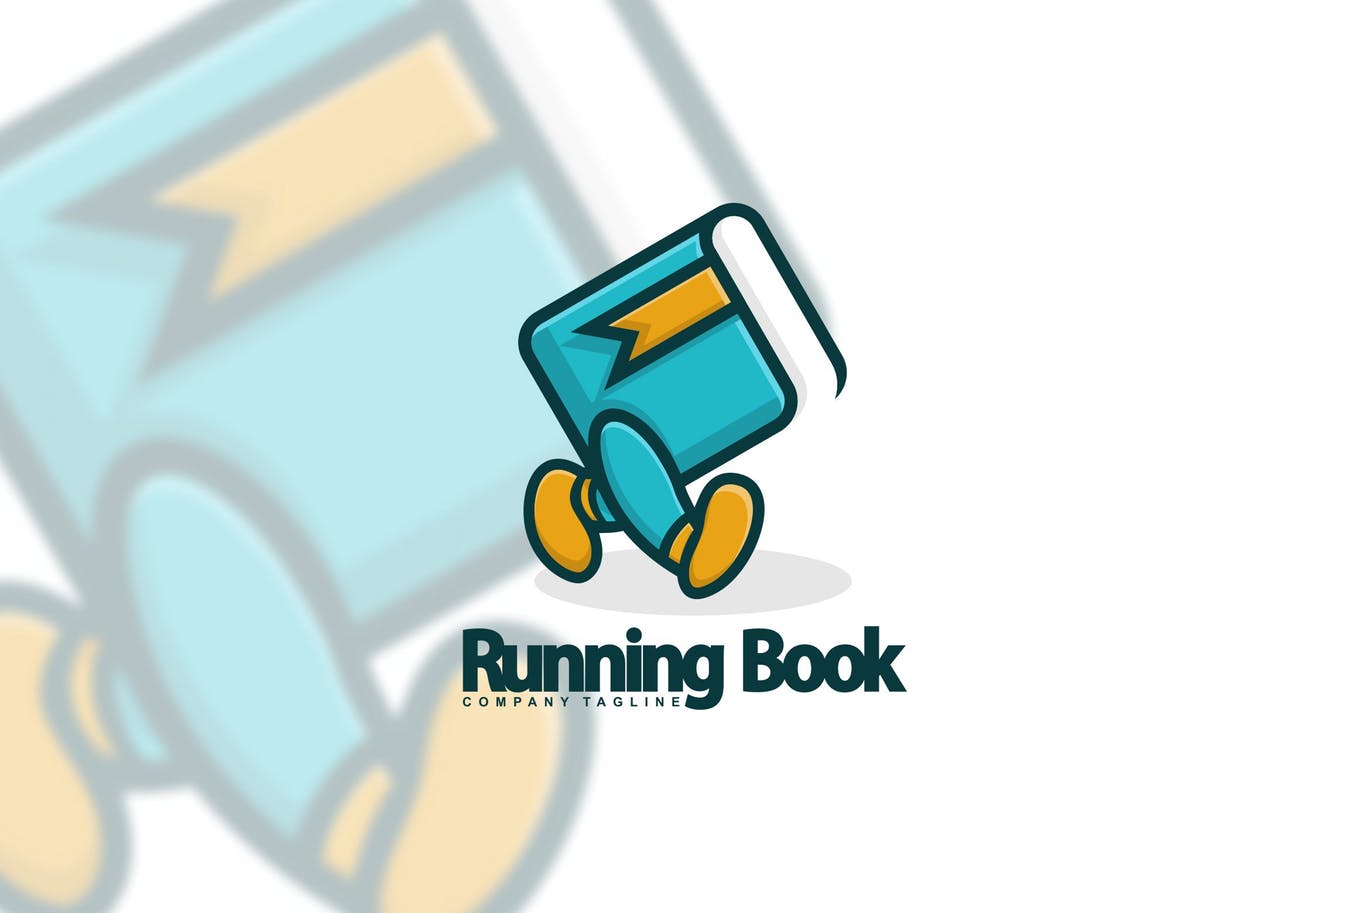 图书出版图书阅读主题“会行走”的书Logo设计蚂蚁素材精选模板 Running Book插图